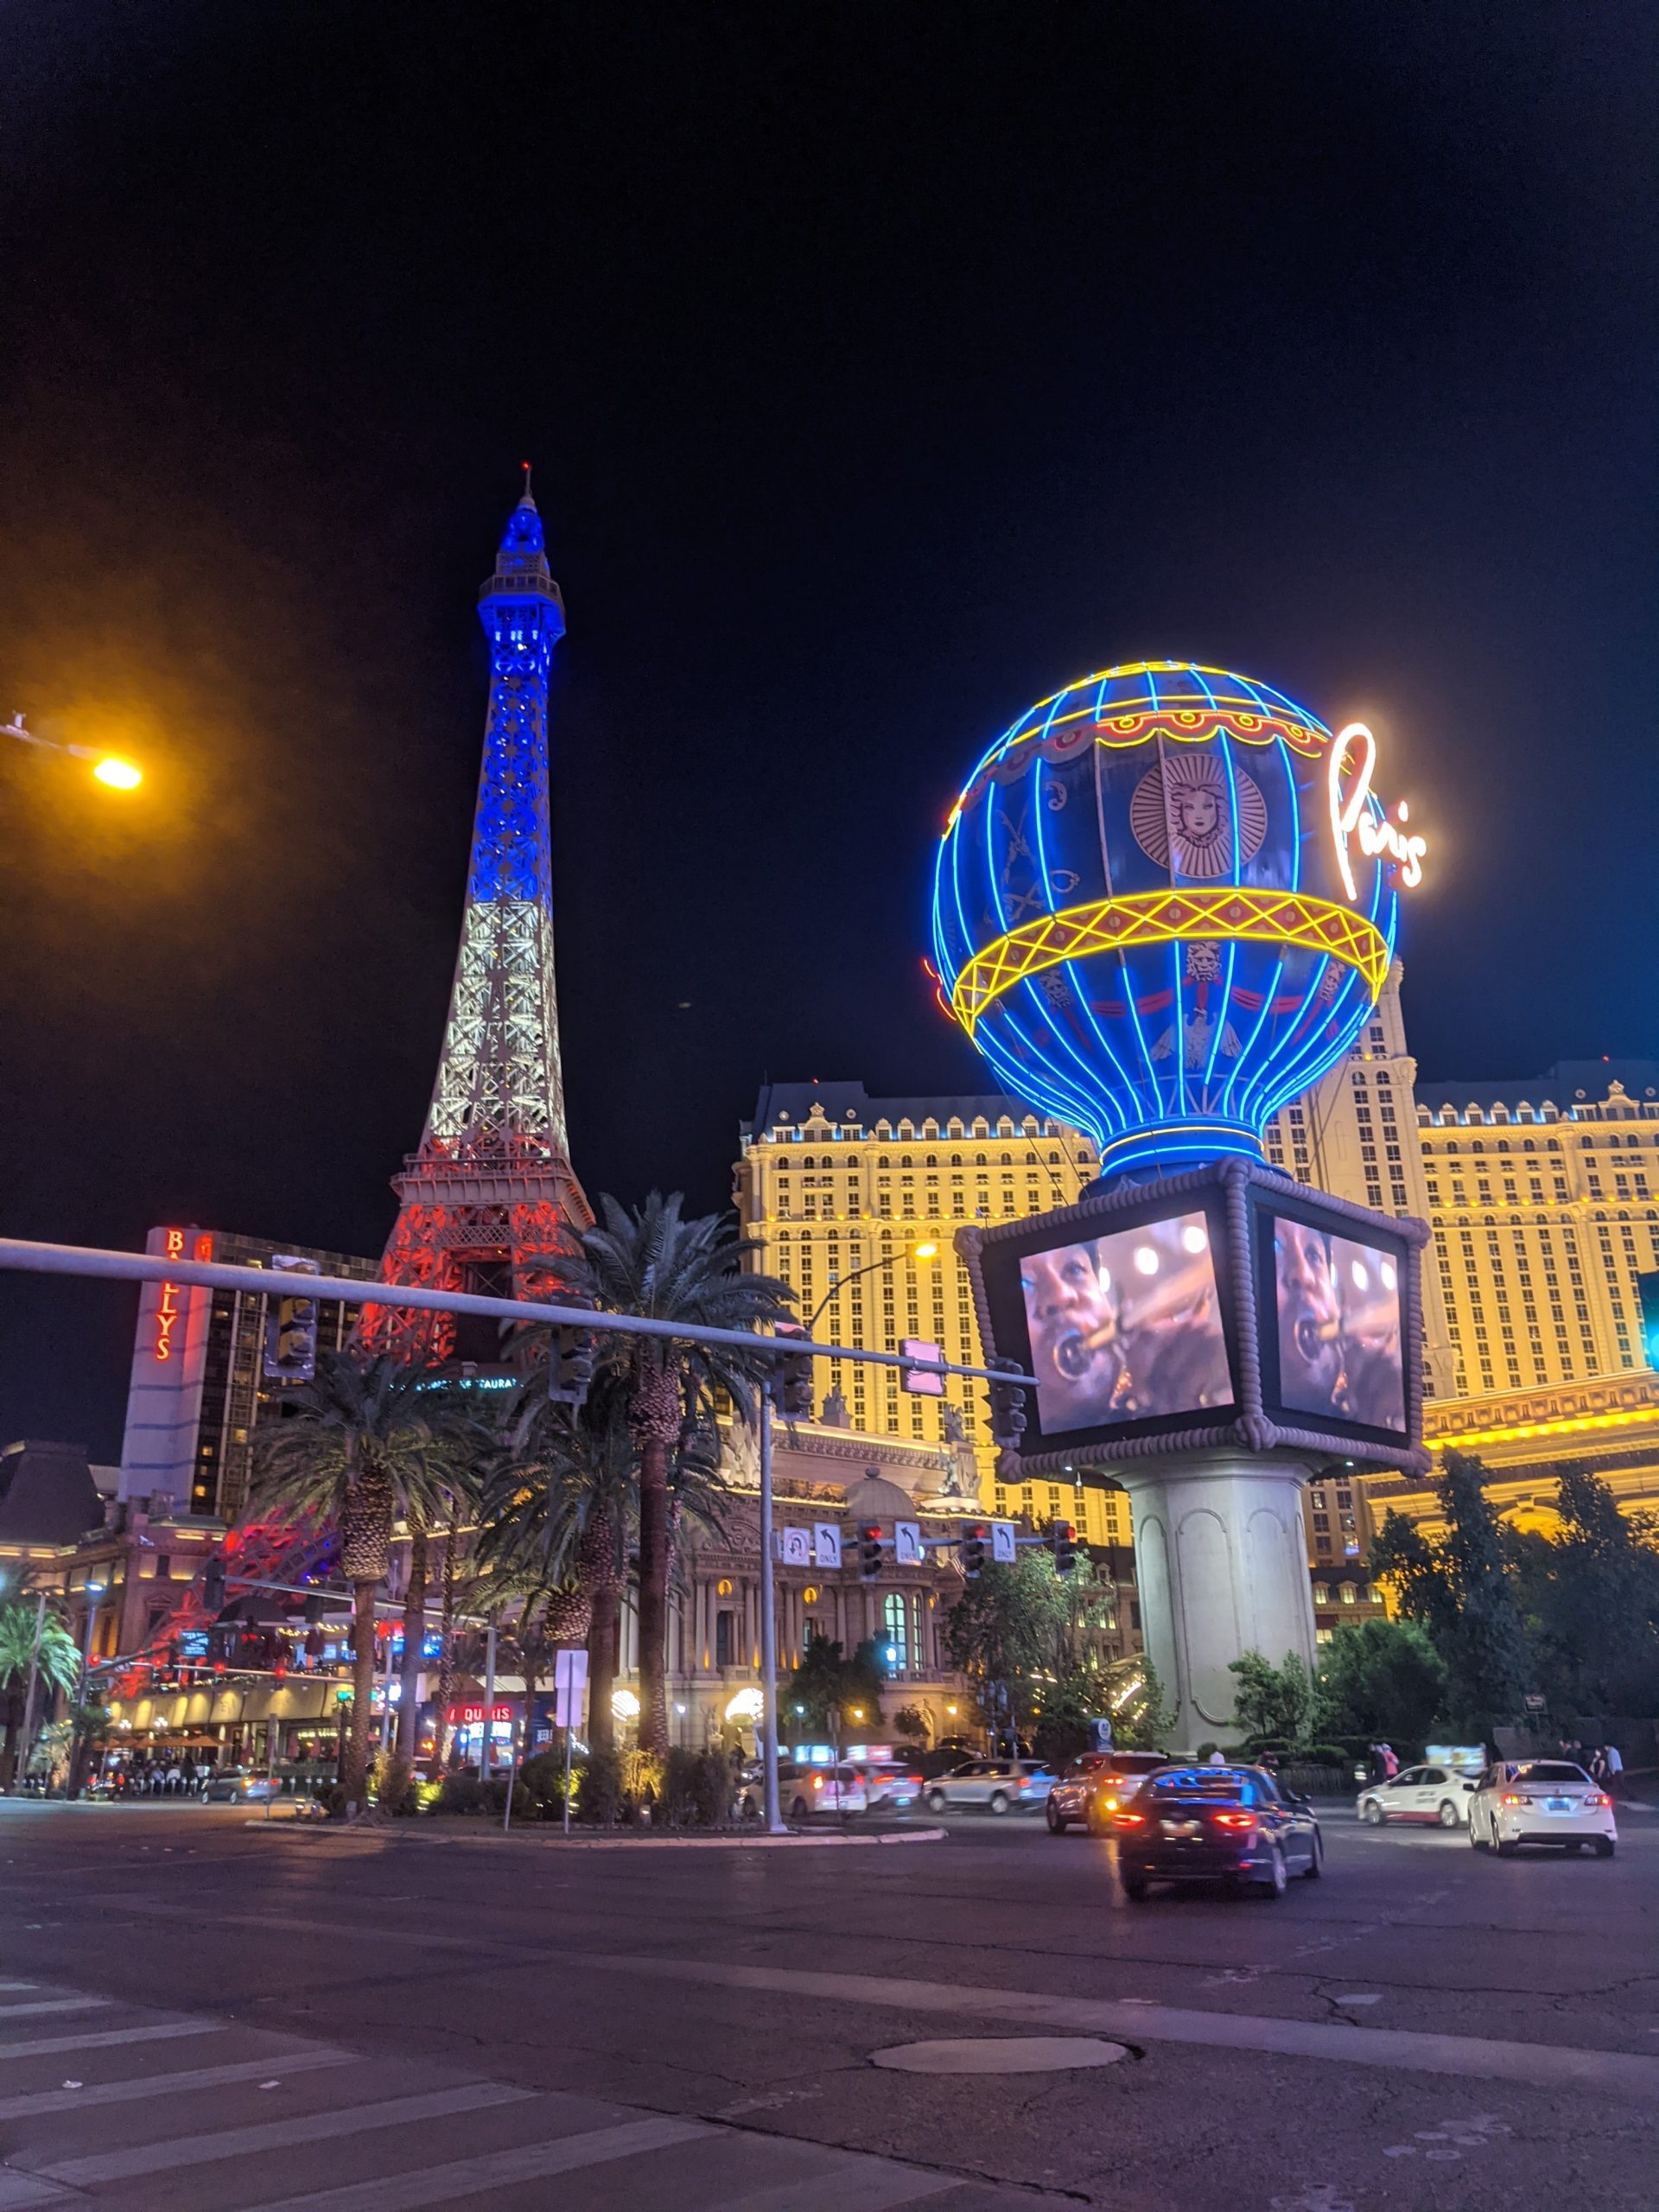 Napodobenina Eiffelovej veži v Las Vegas. Je vysvietená do červeno-bielo-modra.